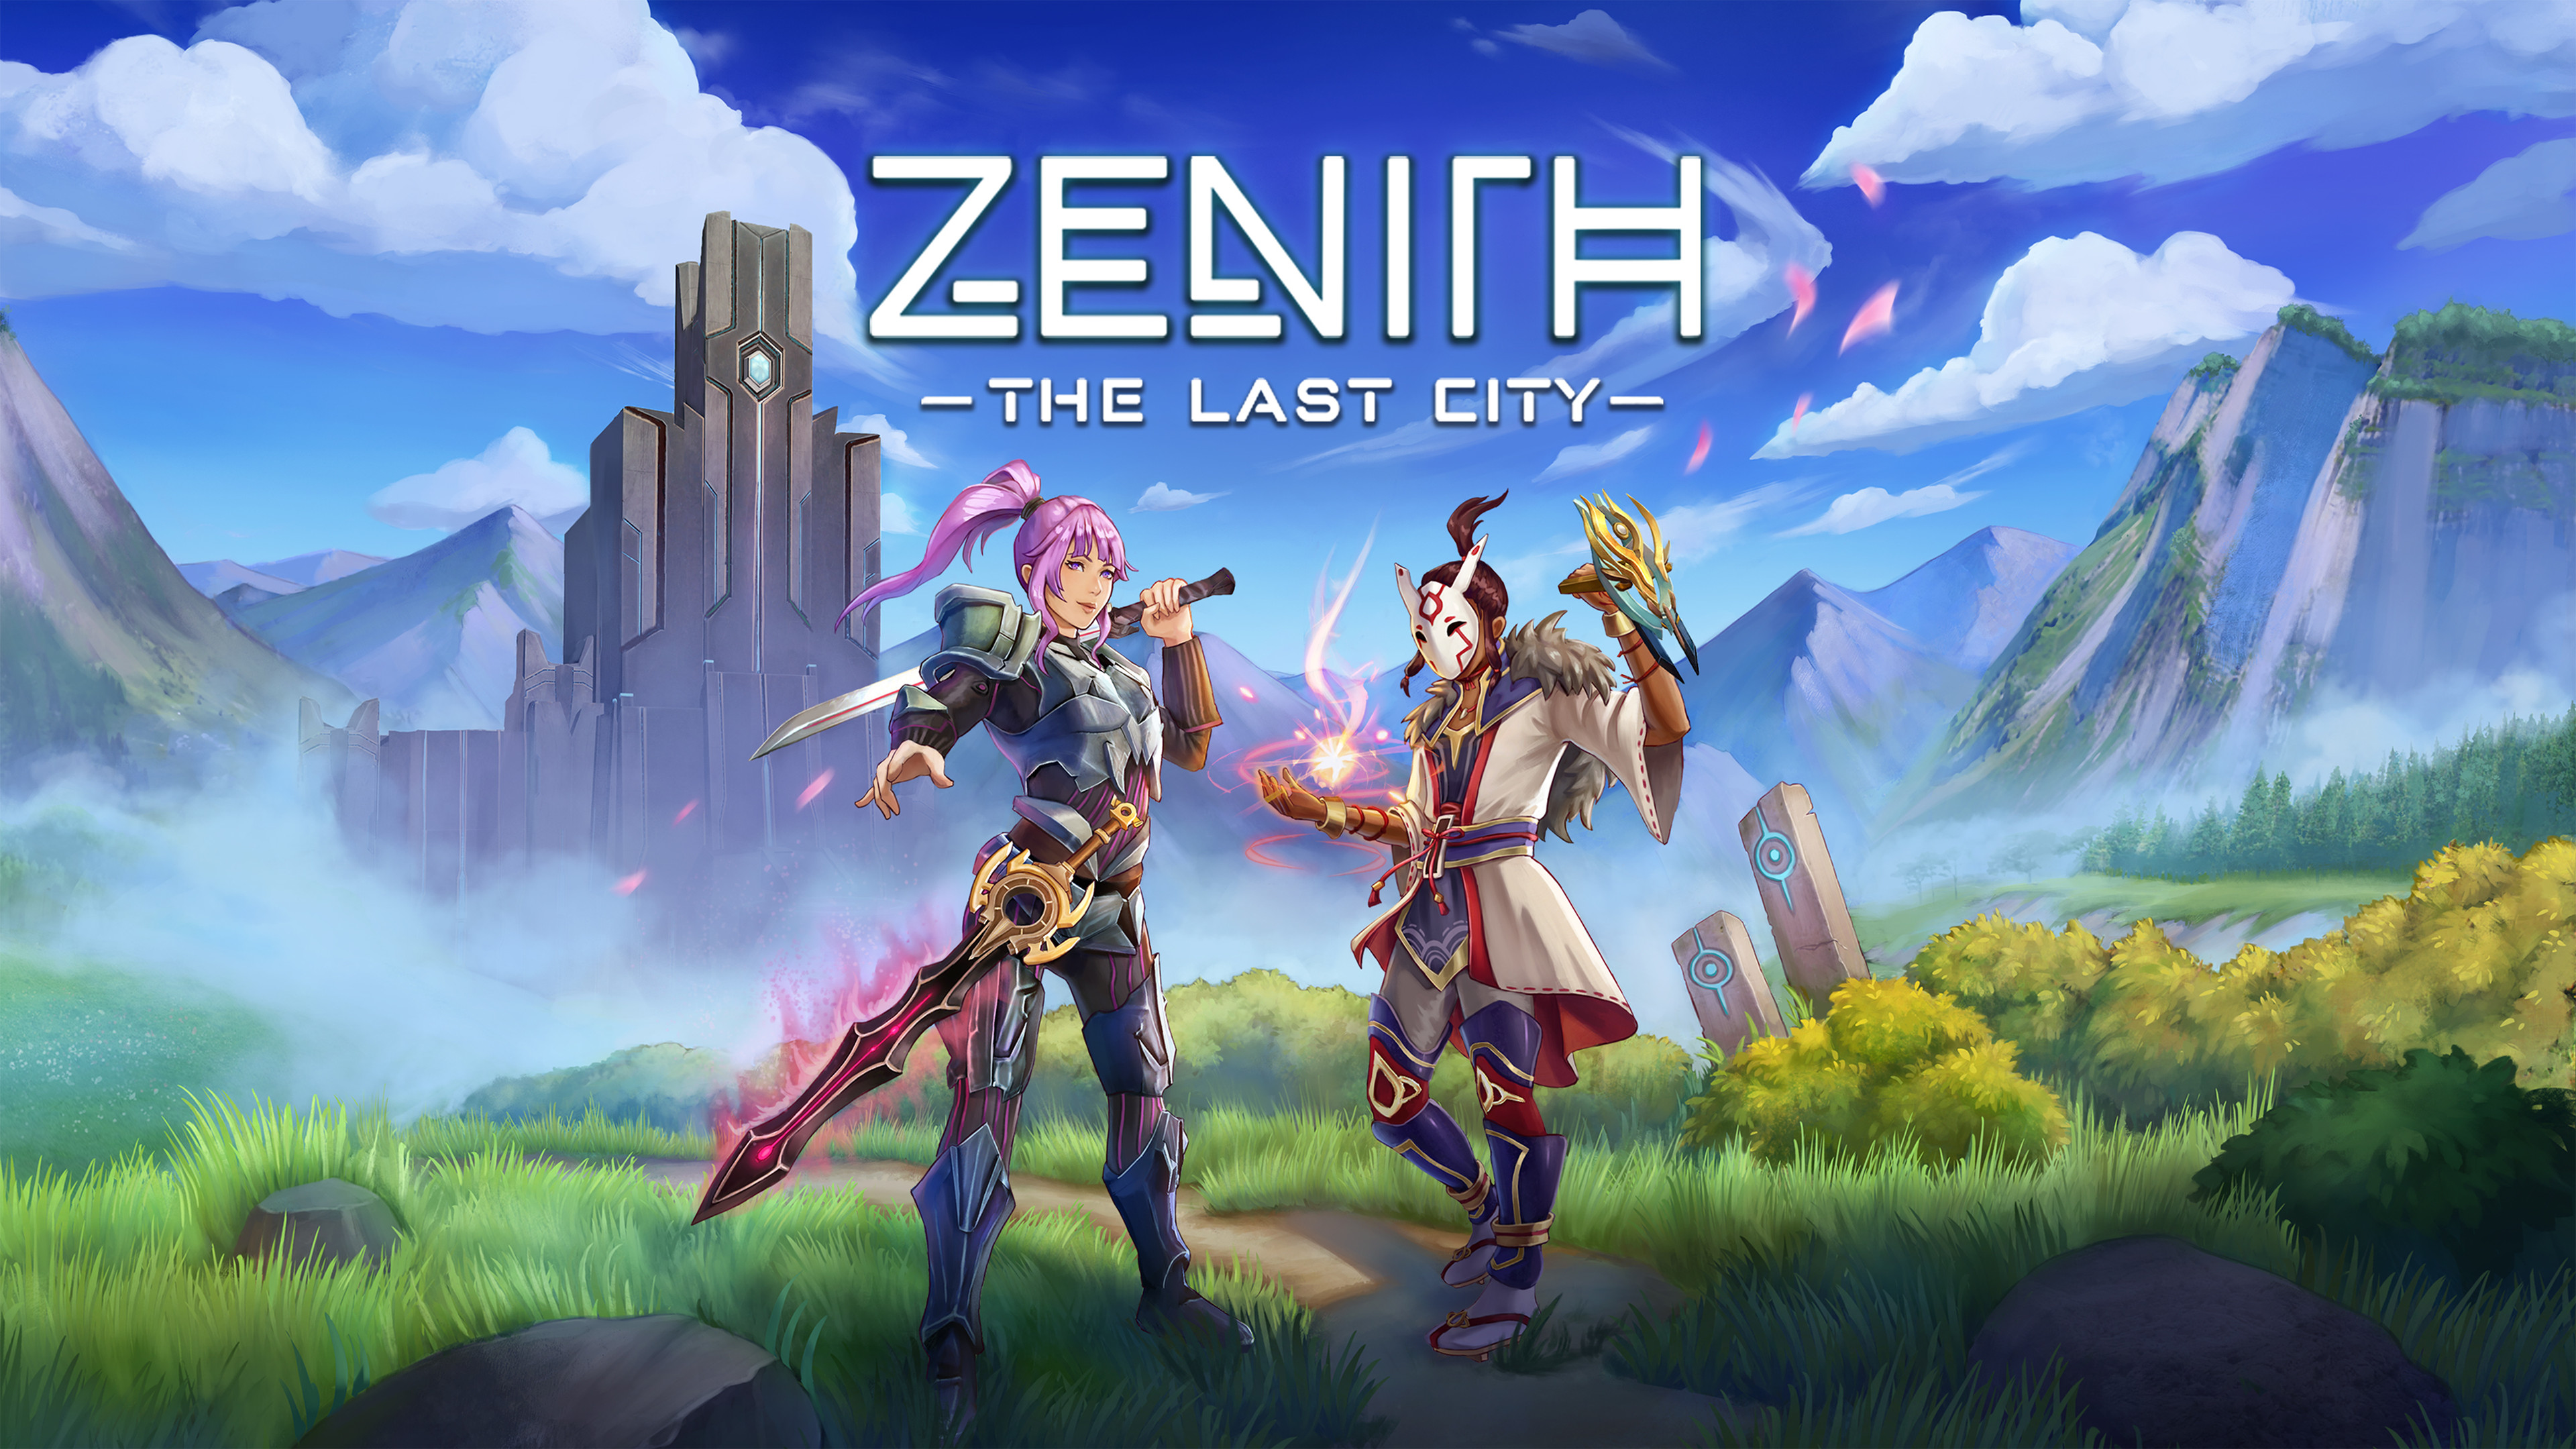 Zenith rng. Zenith ММОРПГ. Zenith: the last City. Zenith VR. ММОРПГ 2022.